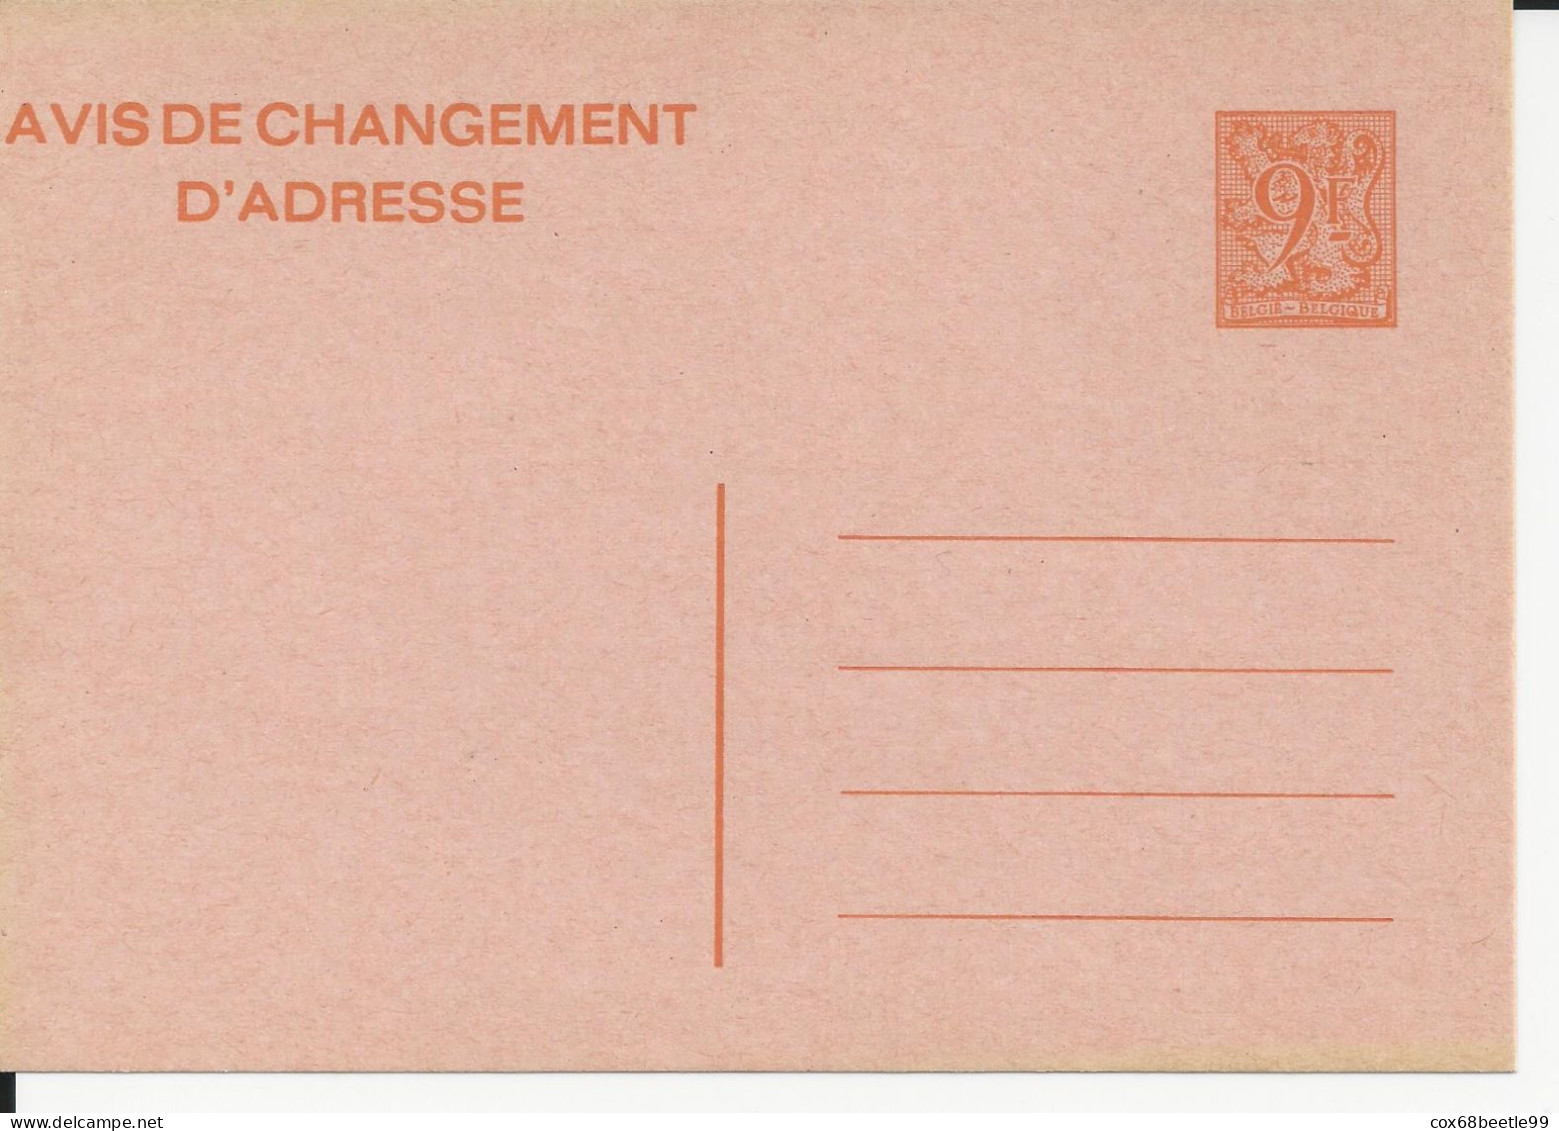 Belgique Belgie Avis Changement D'adresse 9 Francs Neuf Non Circulé - Addr. Chang.